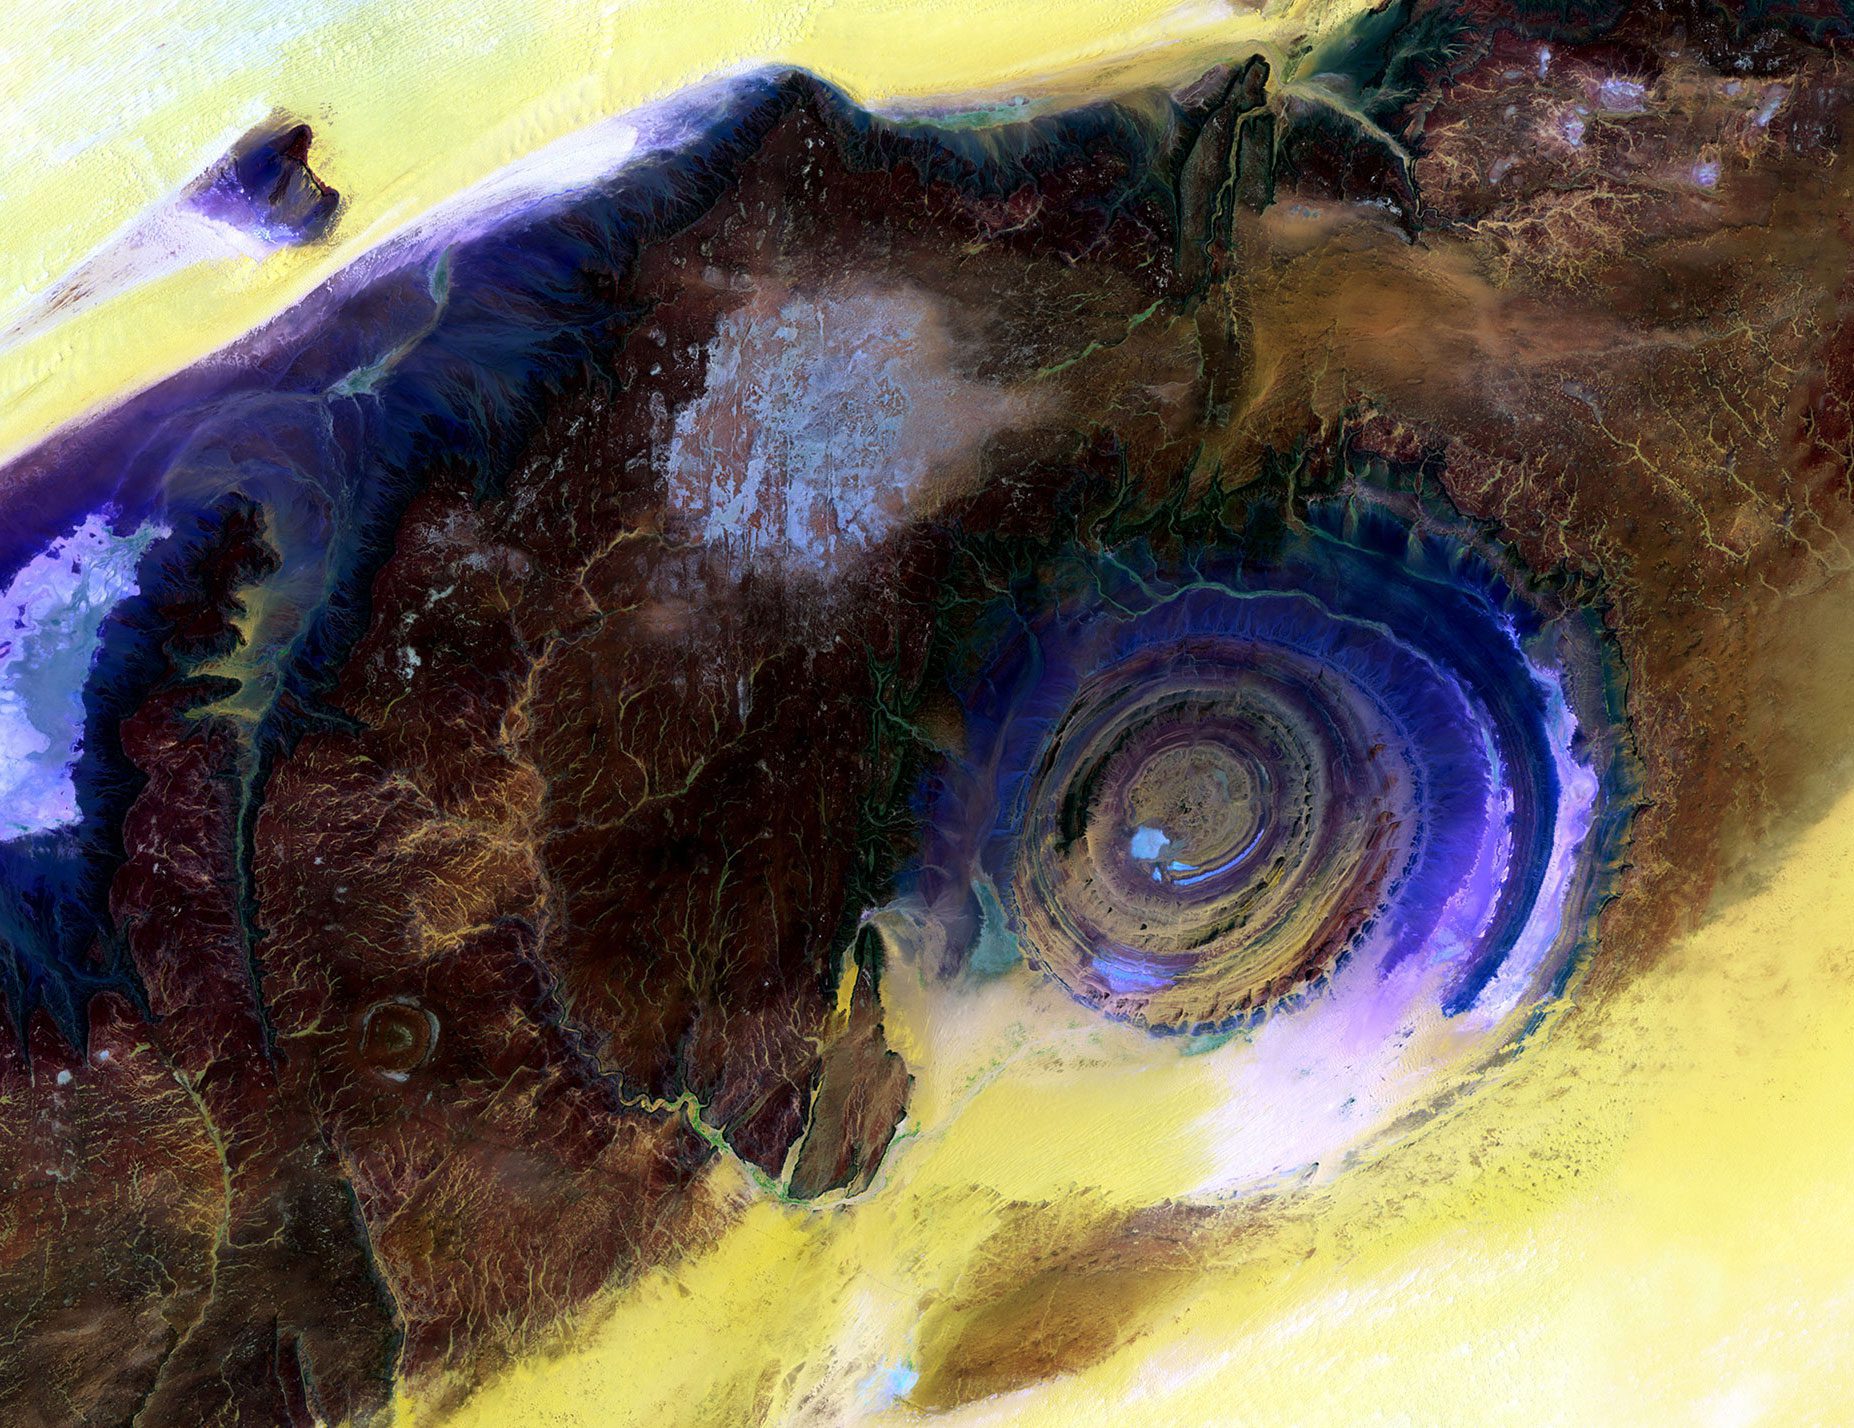 Landsat Sees Eye of the Sahara